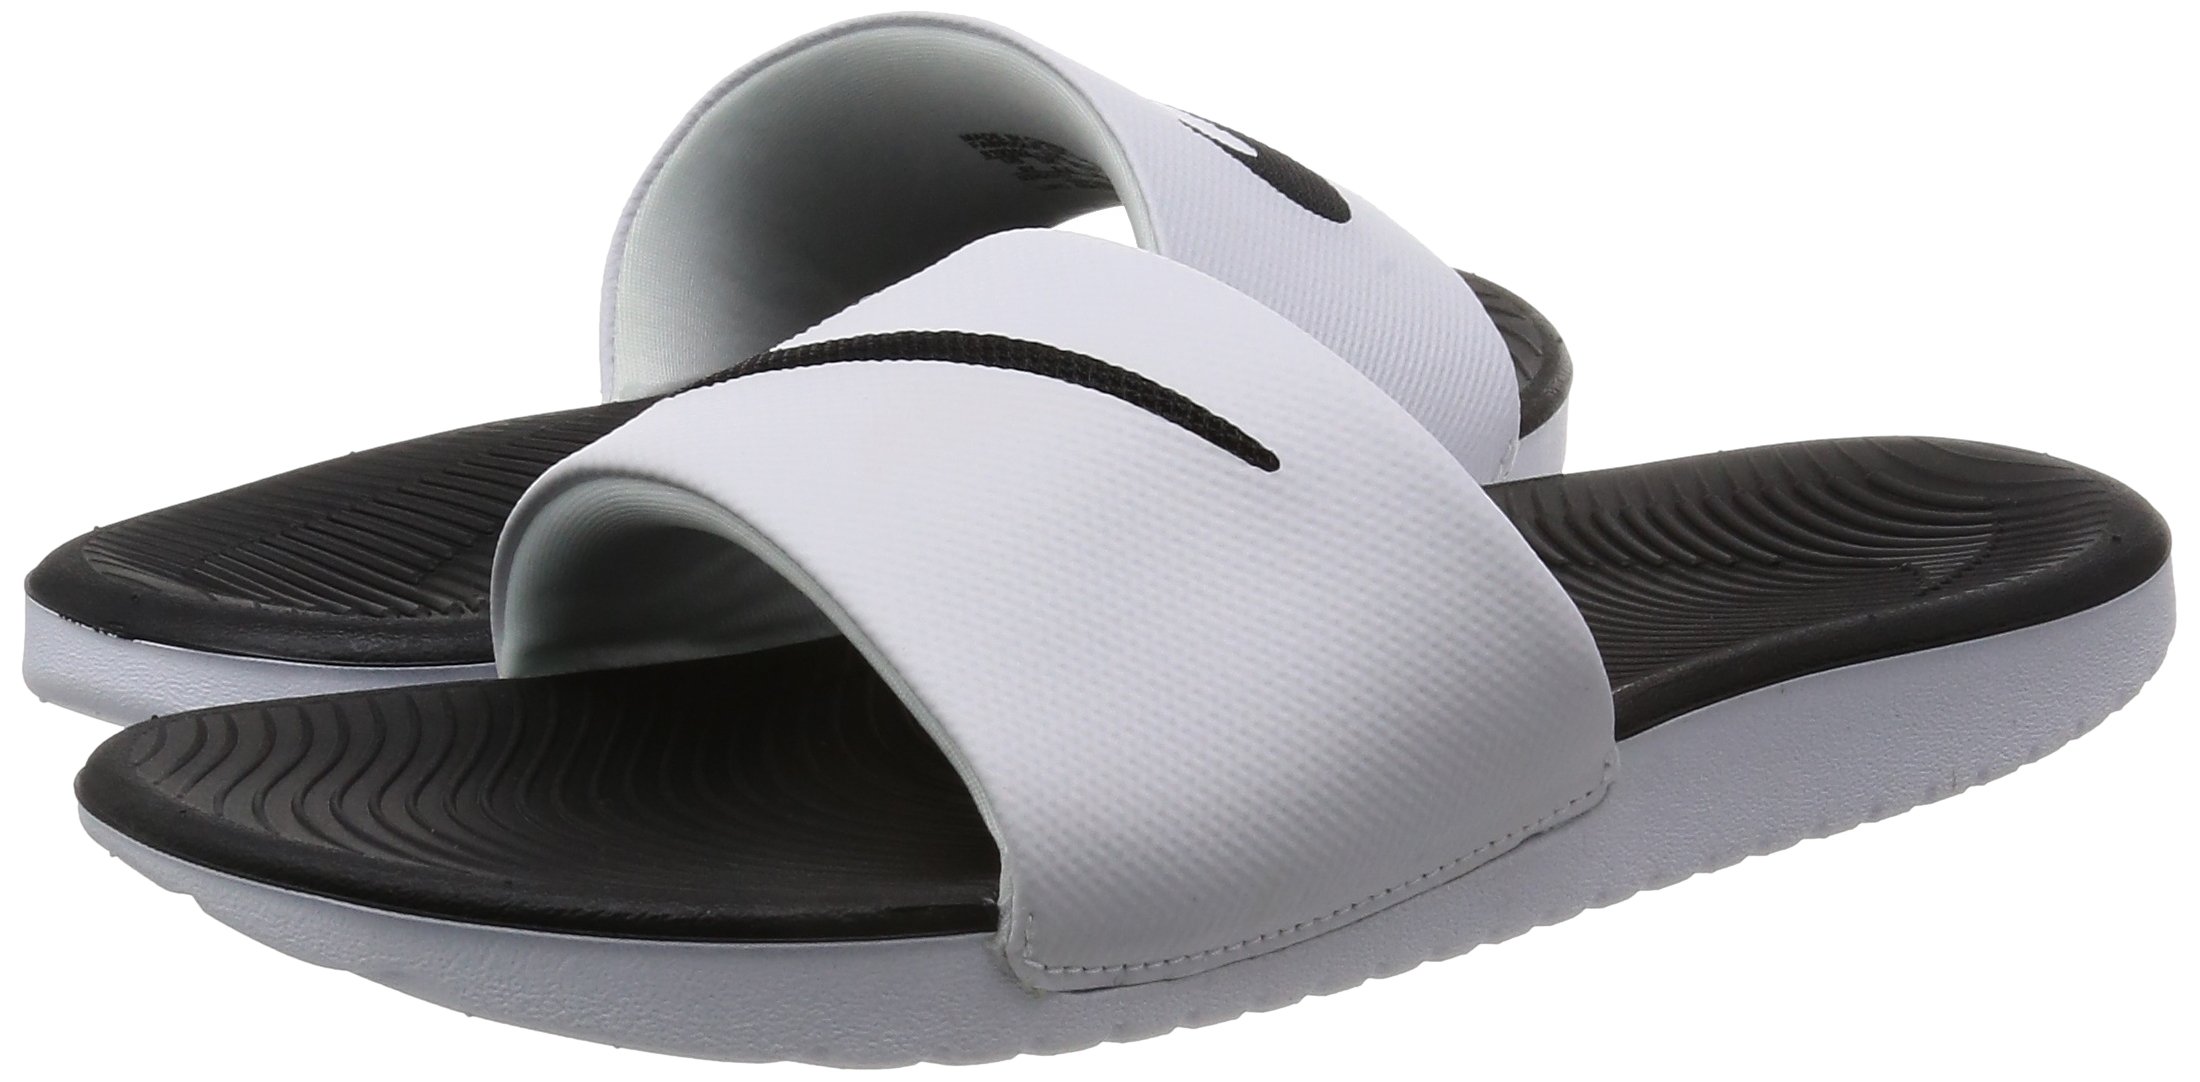 Nike Kawa Youth Slides White | Black Size 3 - image 3 of 7